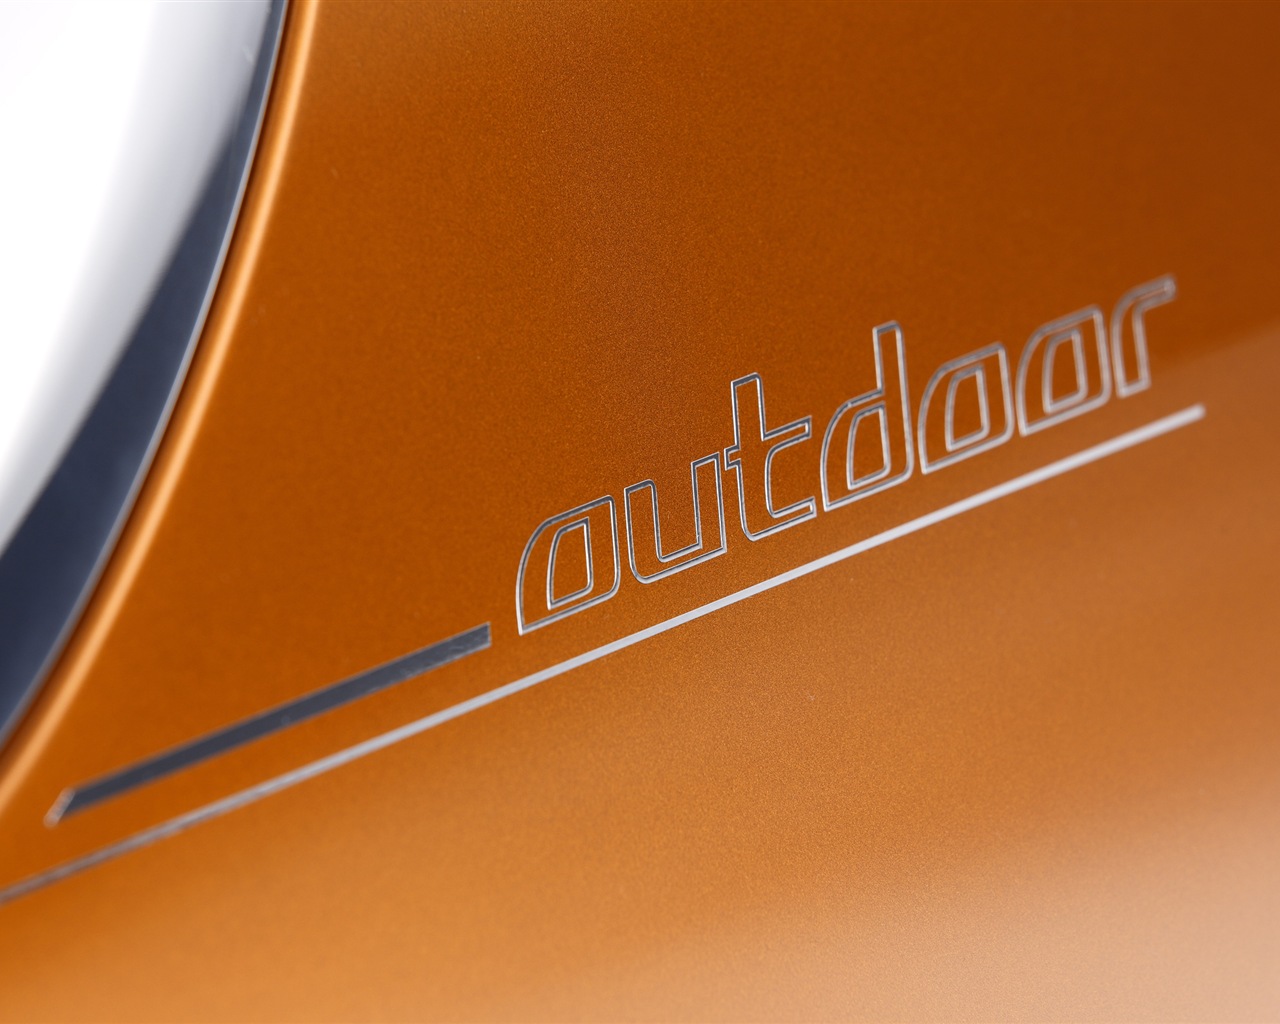 2013 BMW Concept activos Tourer fondos de pantalla de alta definición #17 - 1280x1024